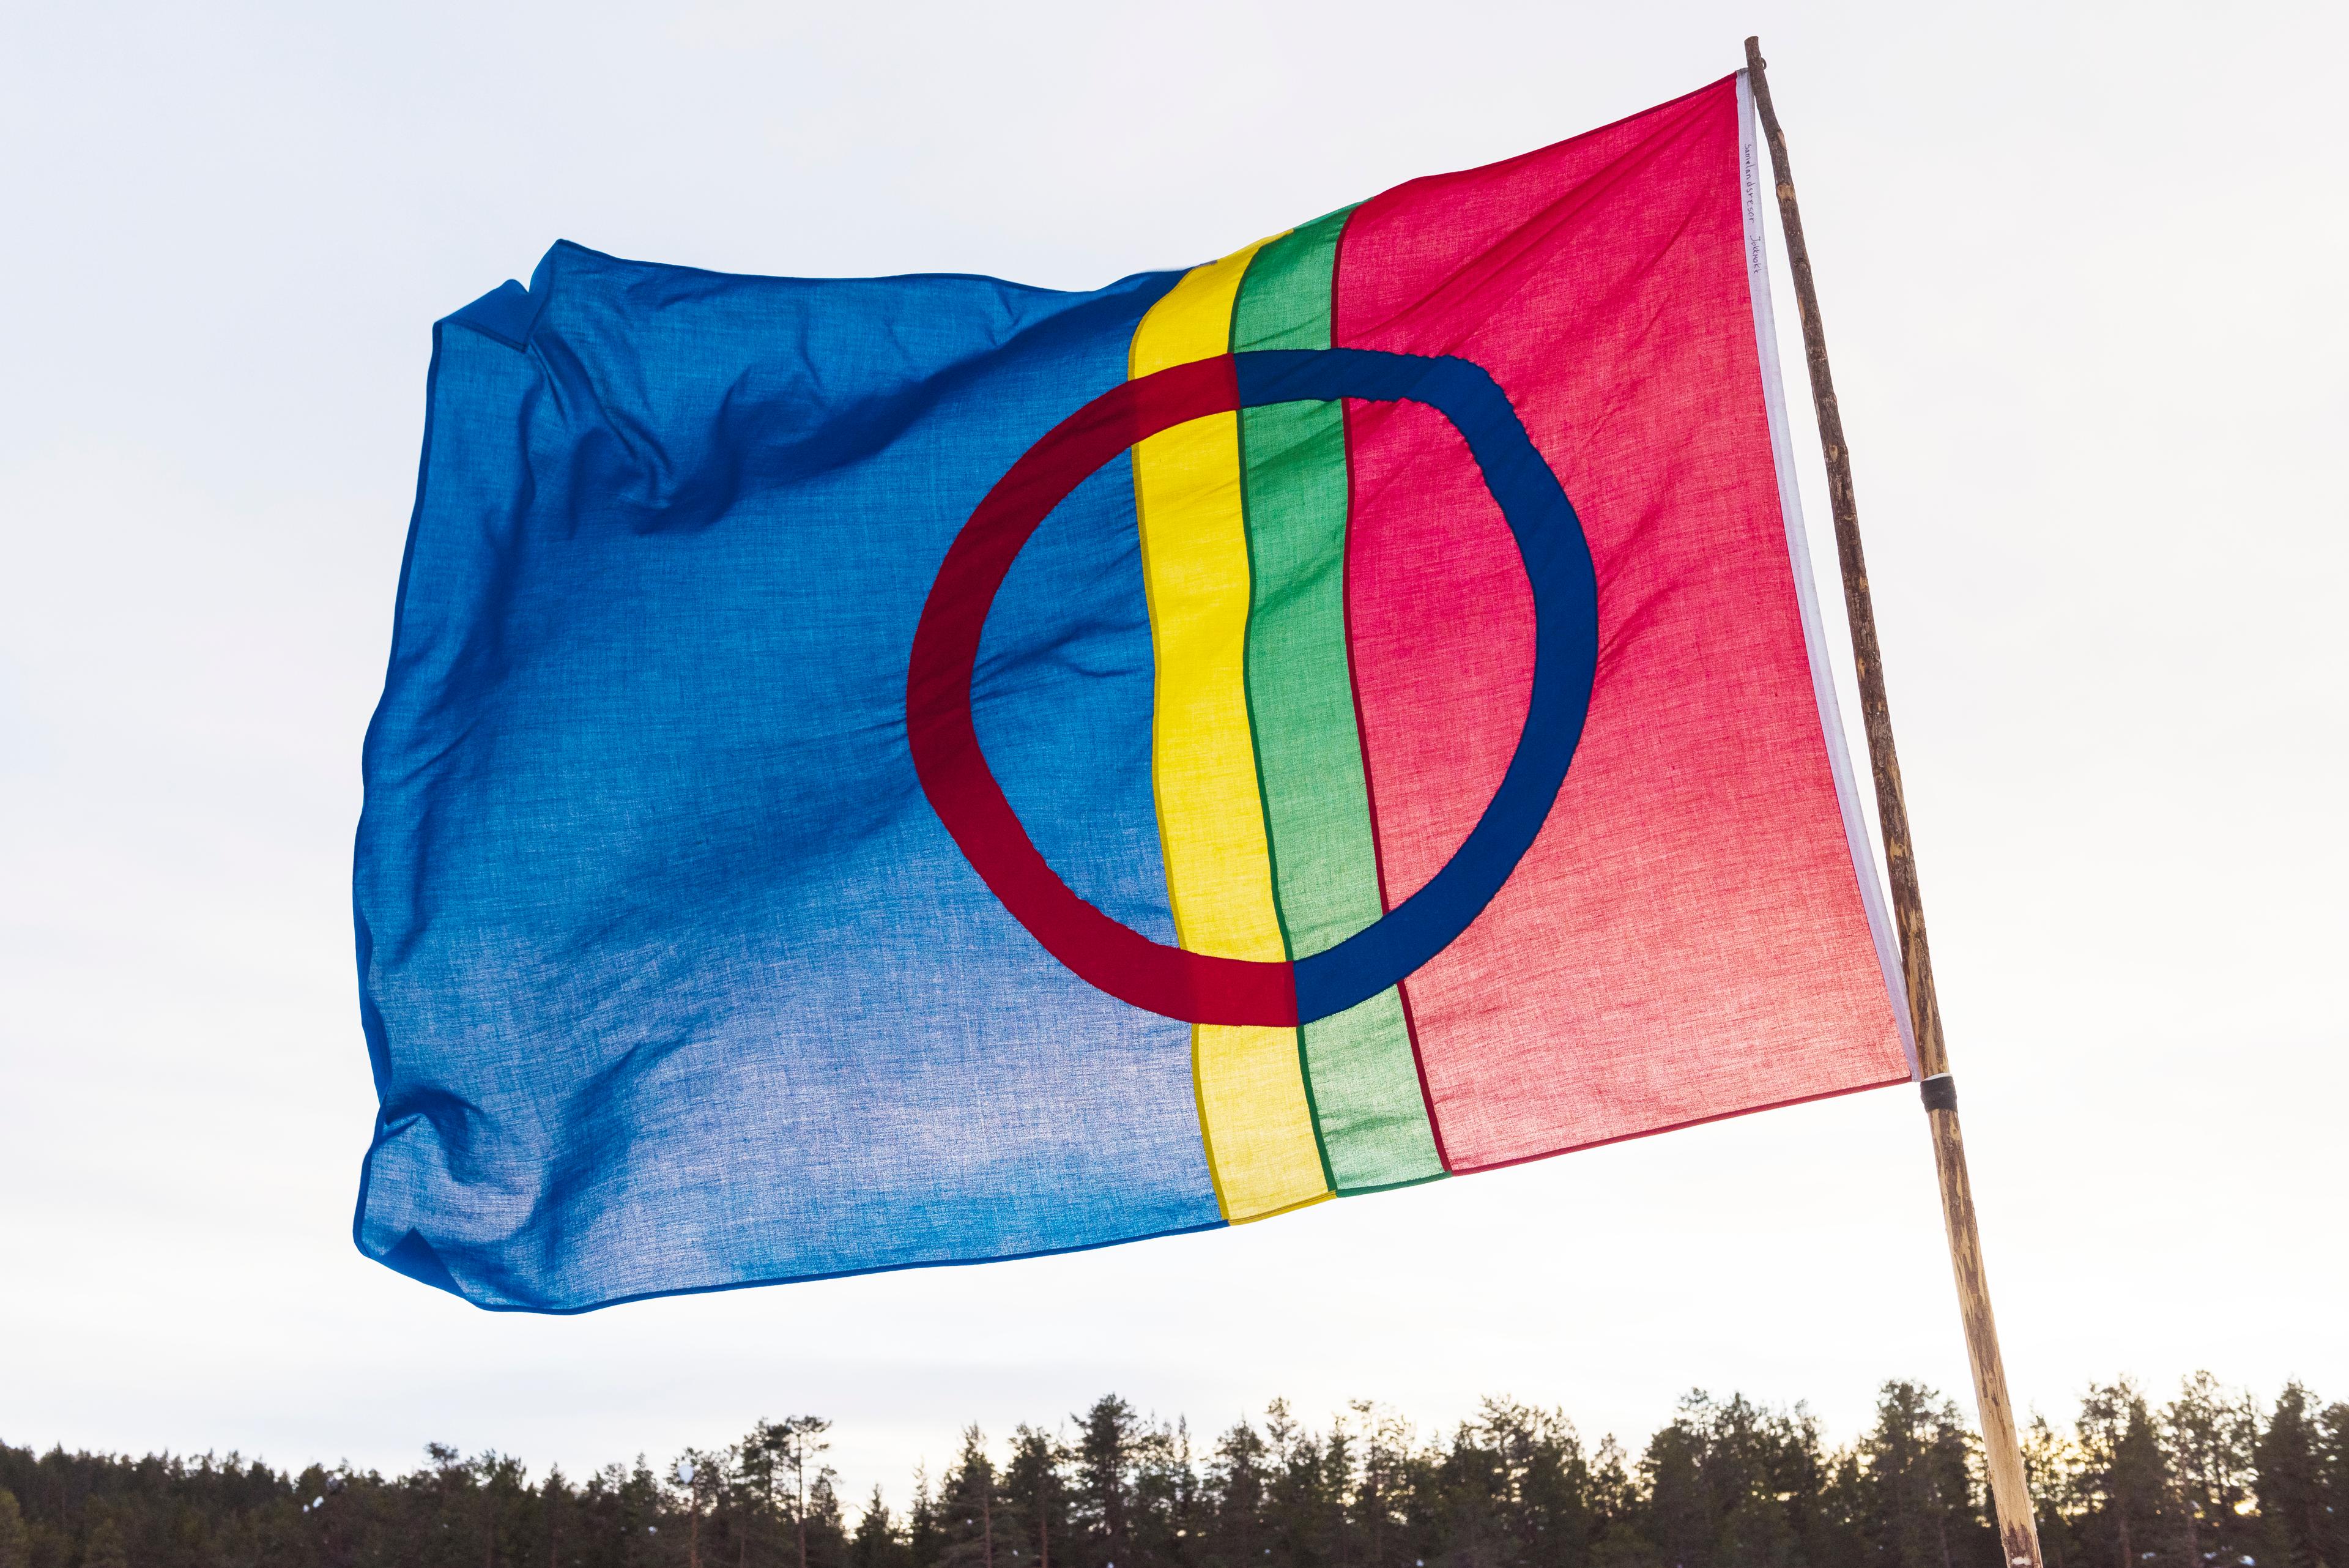 علم قومية سامي المكون من خطوط طولية حمراء وخضراء وصفراء وزرقاء ودائرة فى منتصفه..